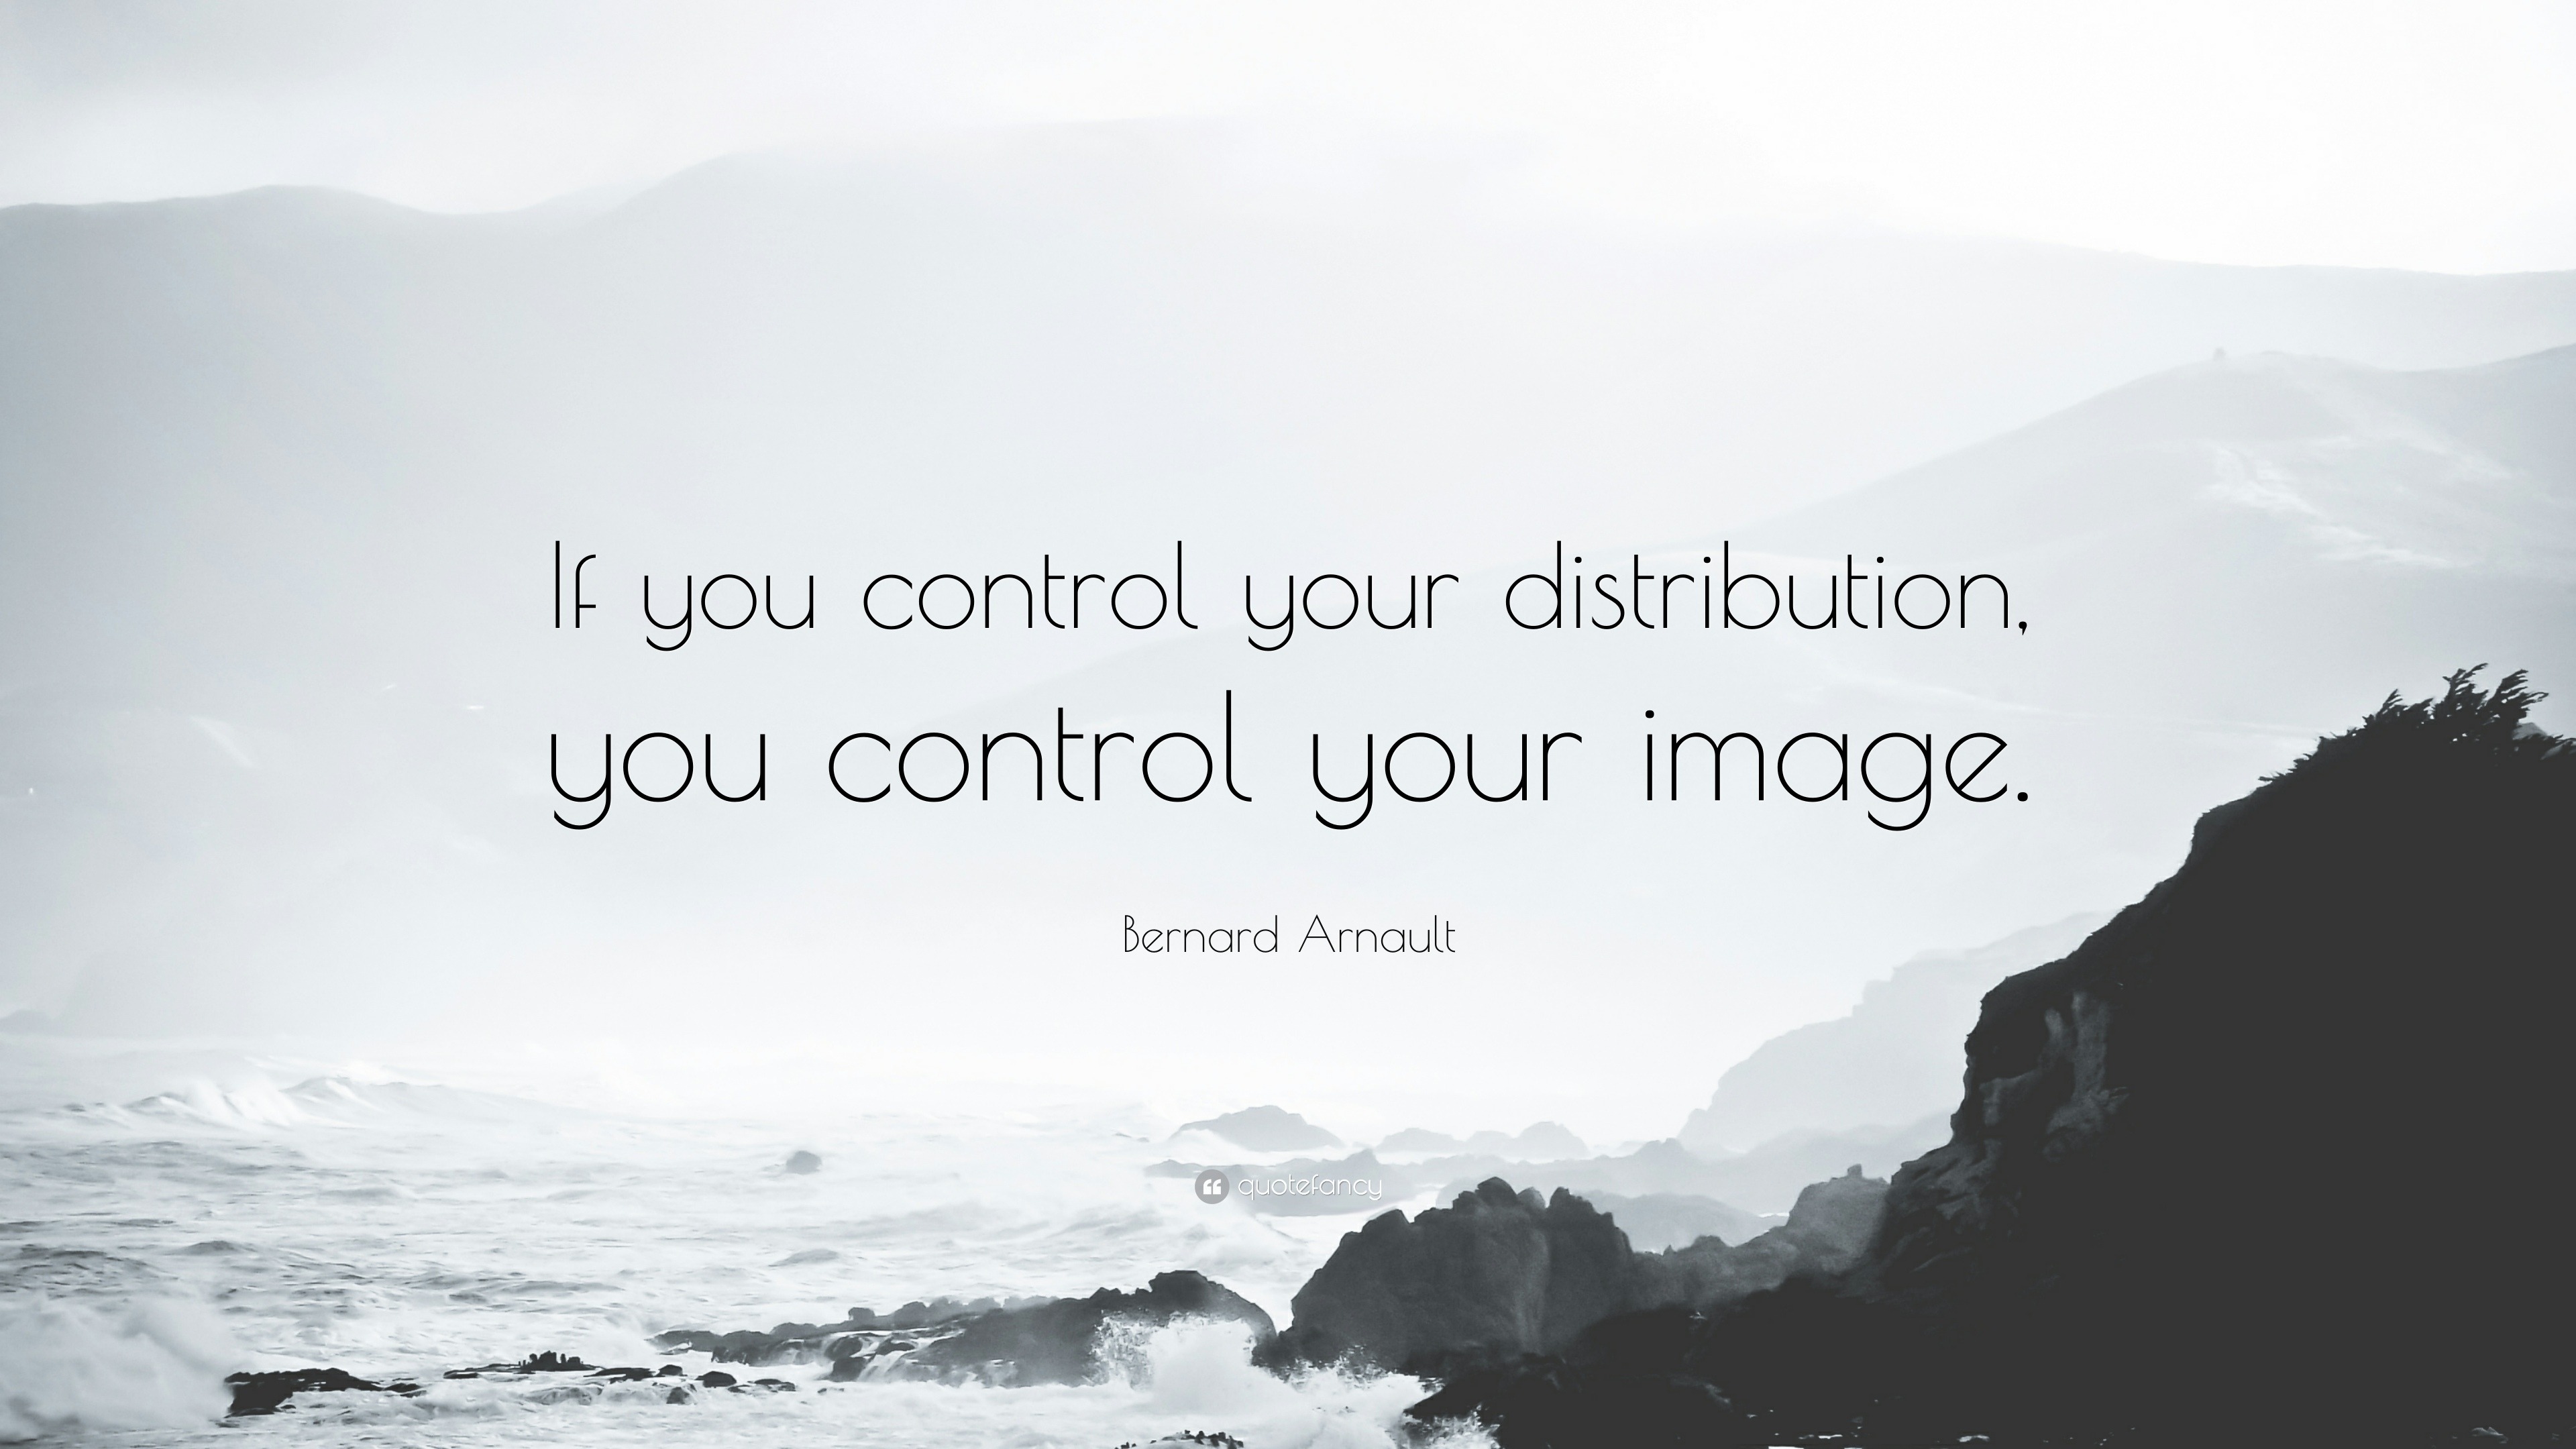 Top 10 Bernard Arnault Quotes